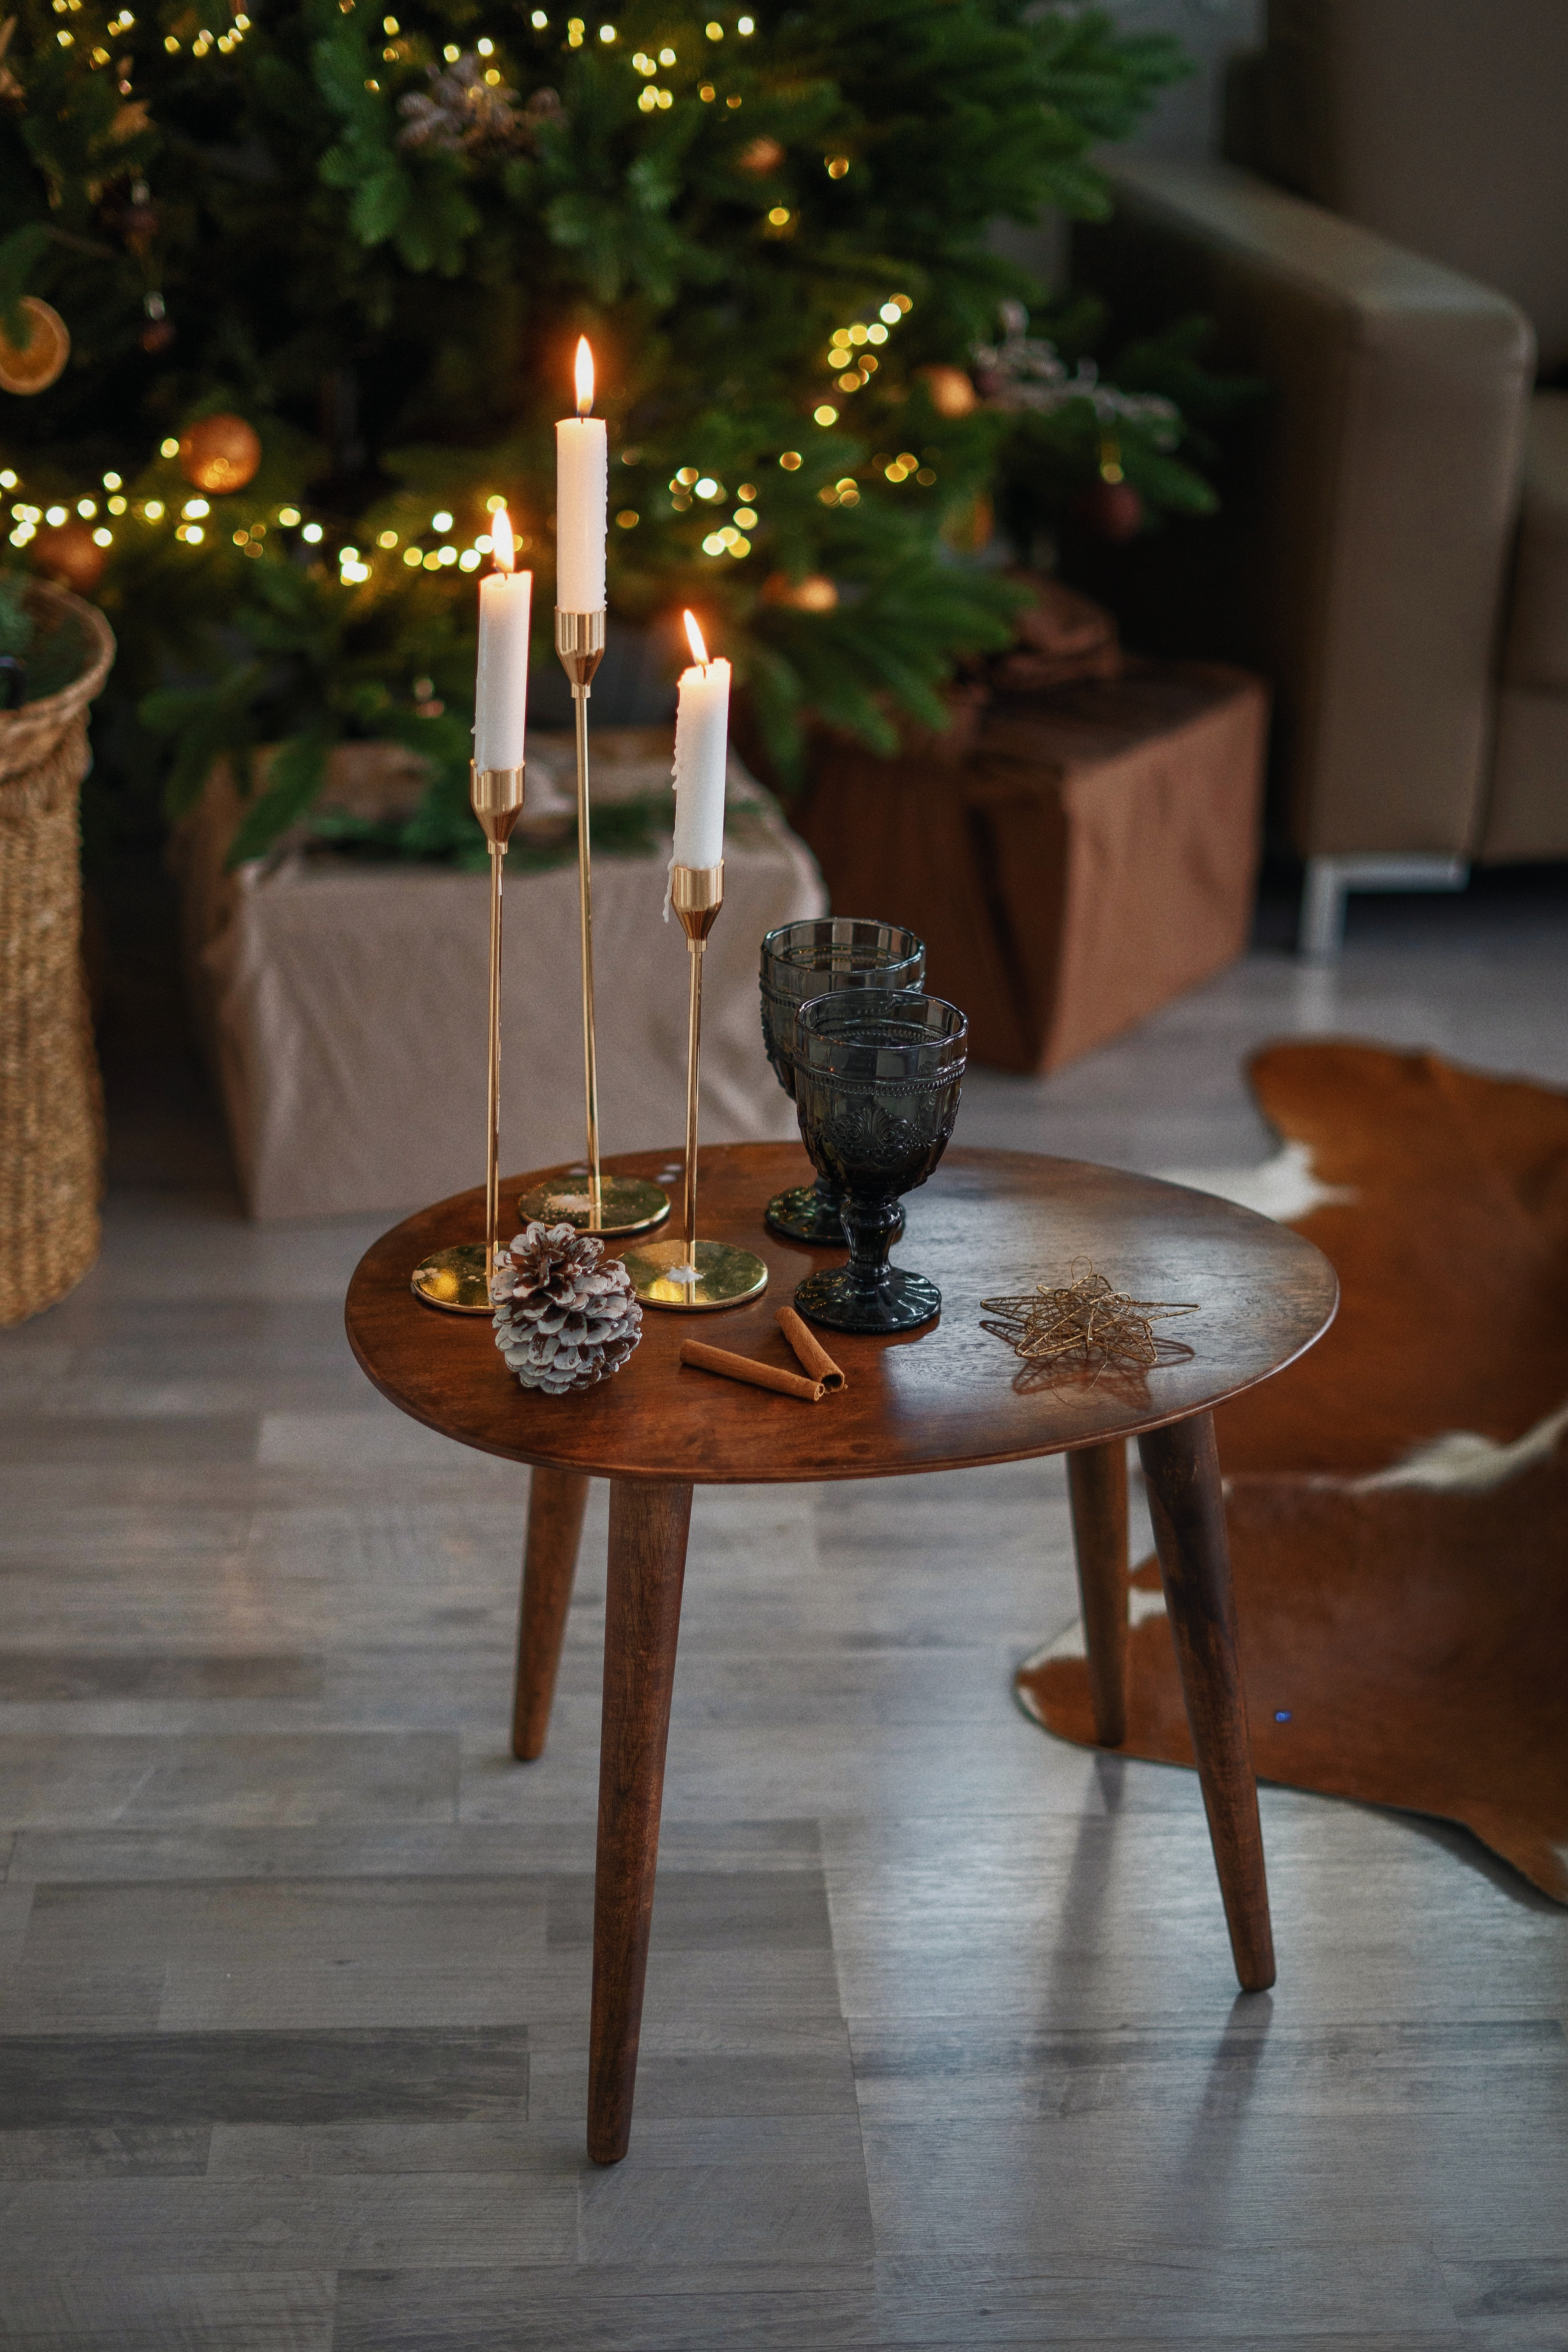 Zuhause weihnachtlich dekorieren | www.rabattcoupon.com